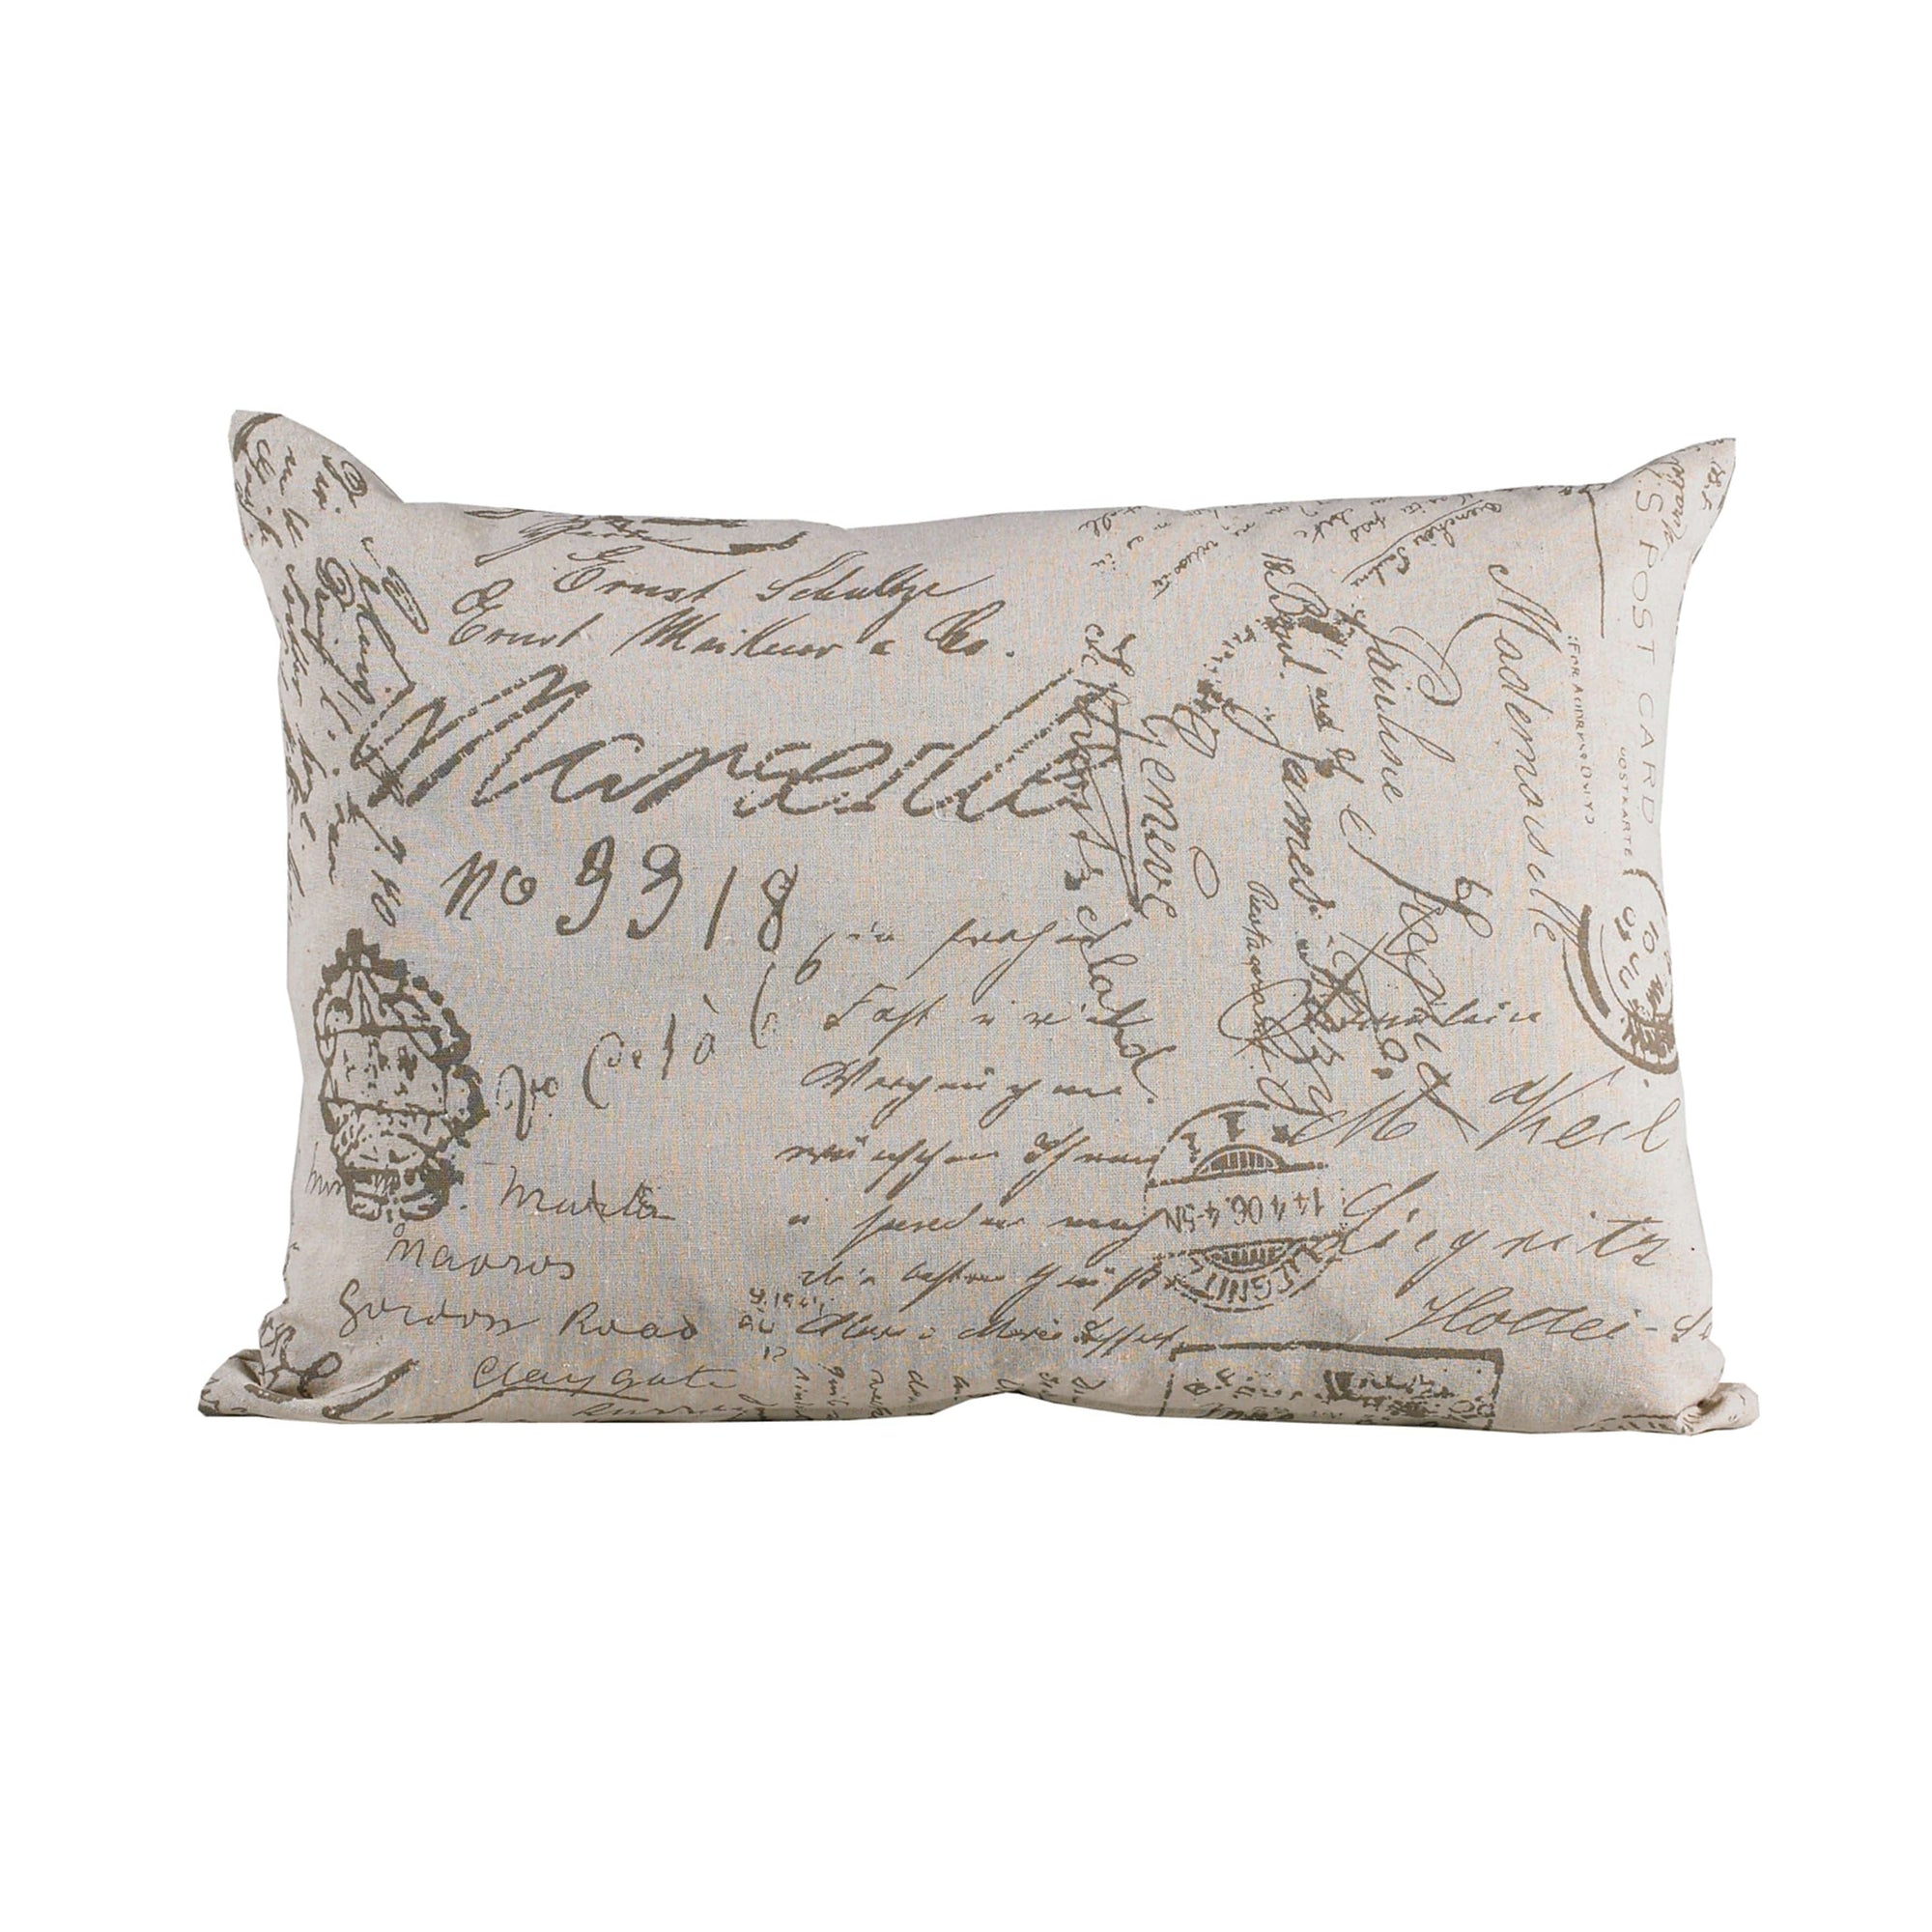 Fairfield Printed Linen Throw Pillow, 16x21 Pillow